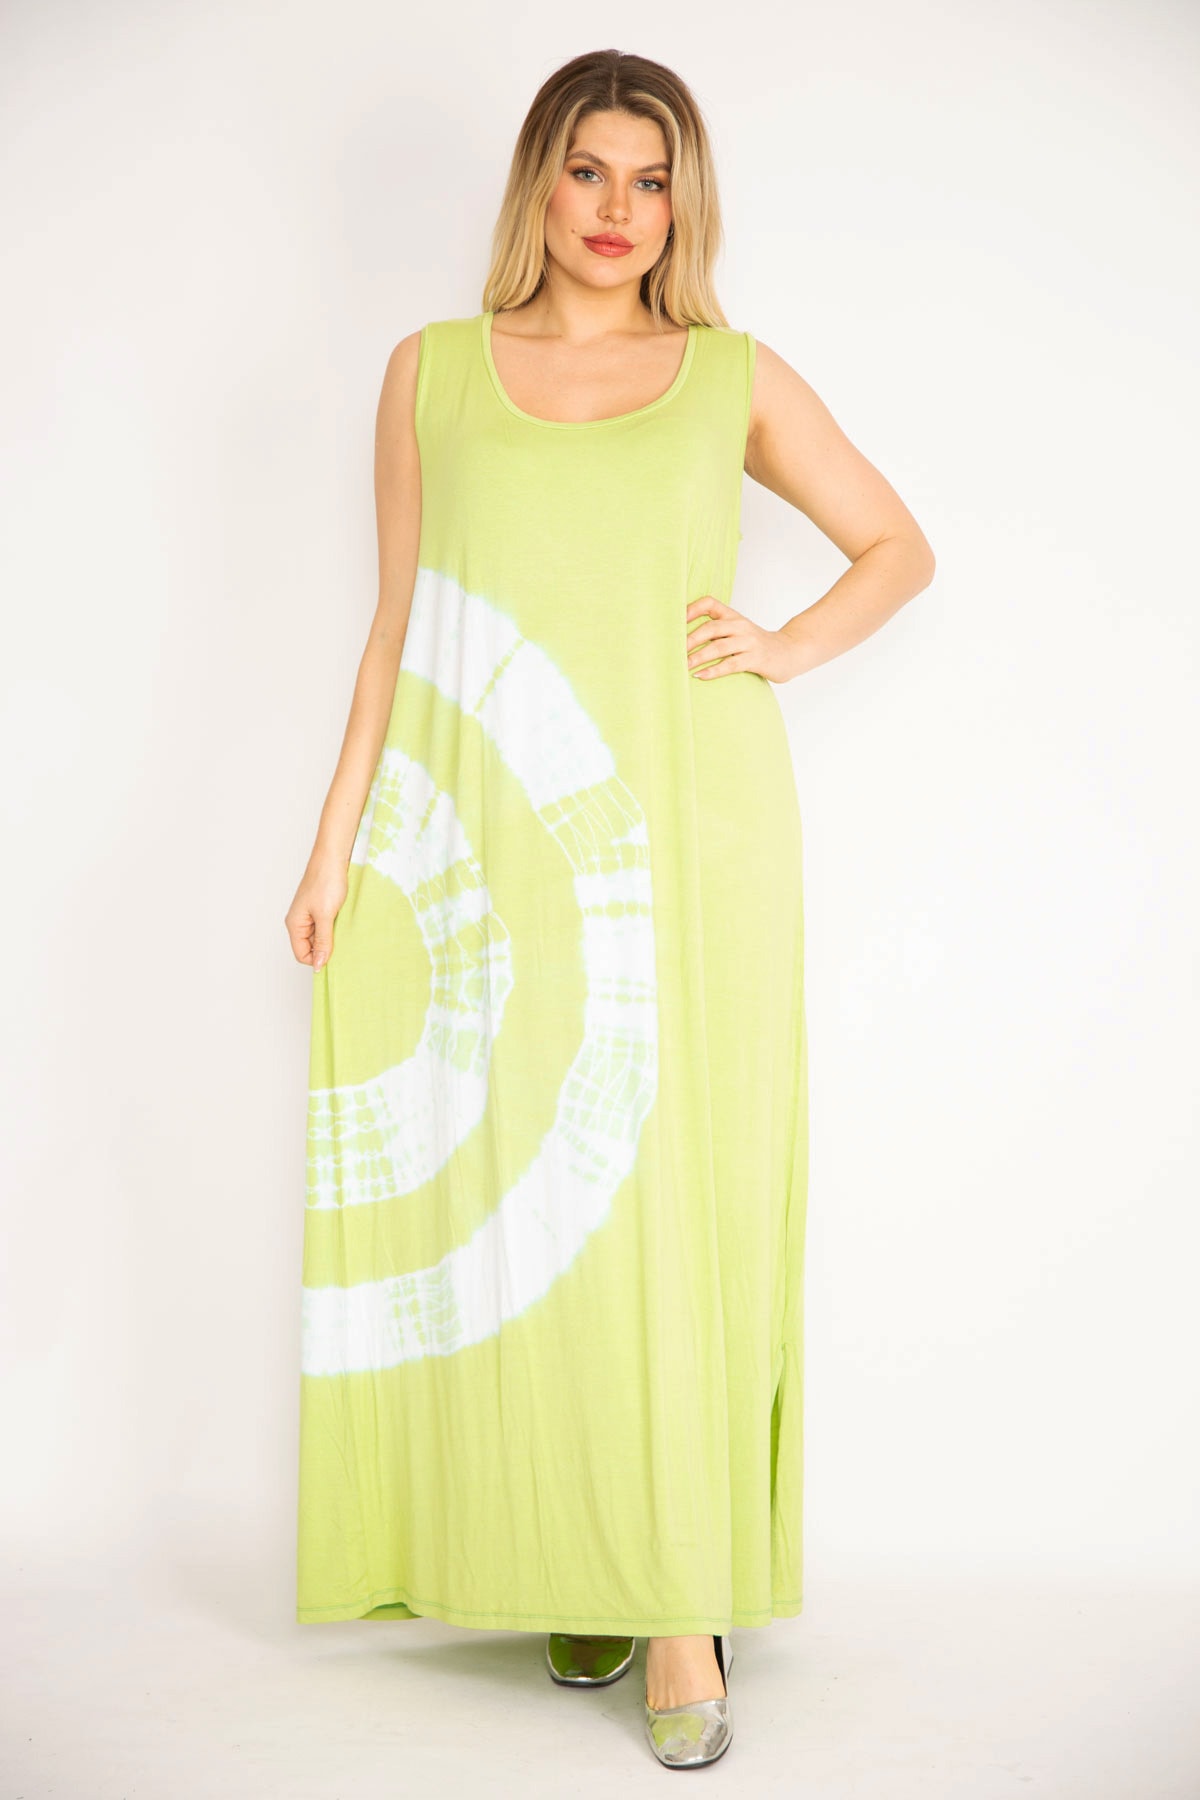 Levně Şans Women's Green Tie Dye Patterned Long Dress with Side Slits